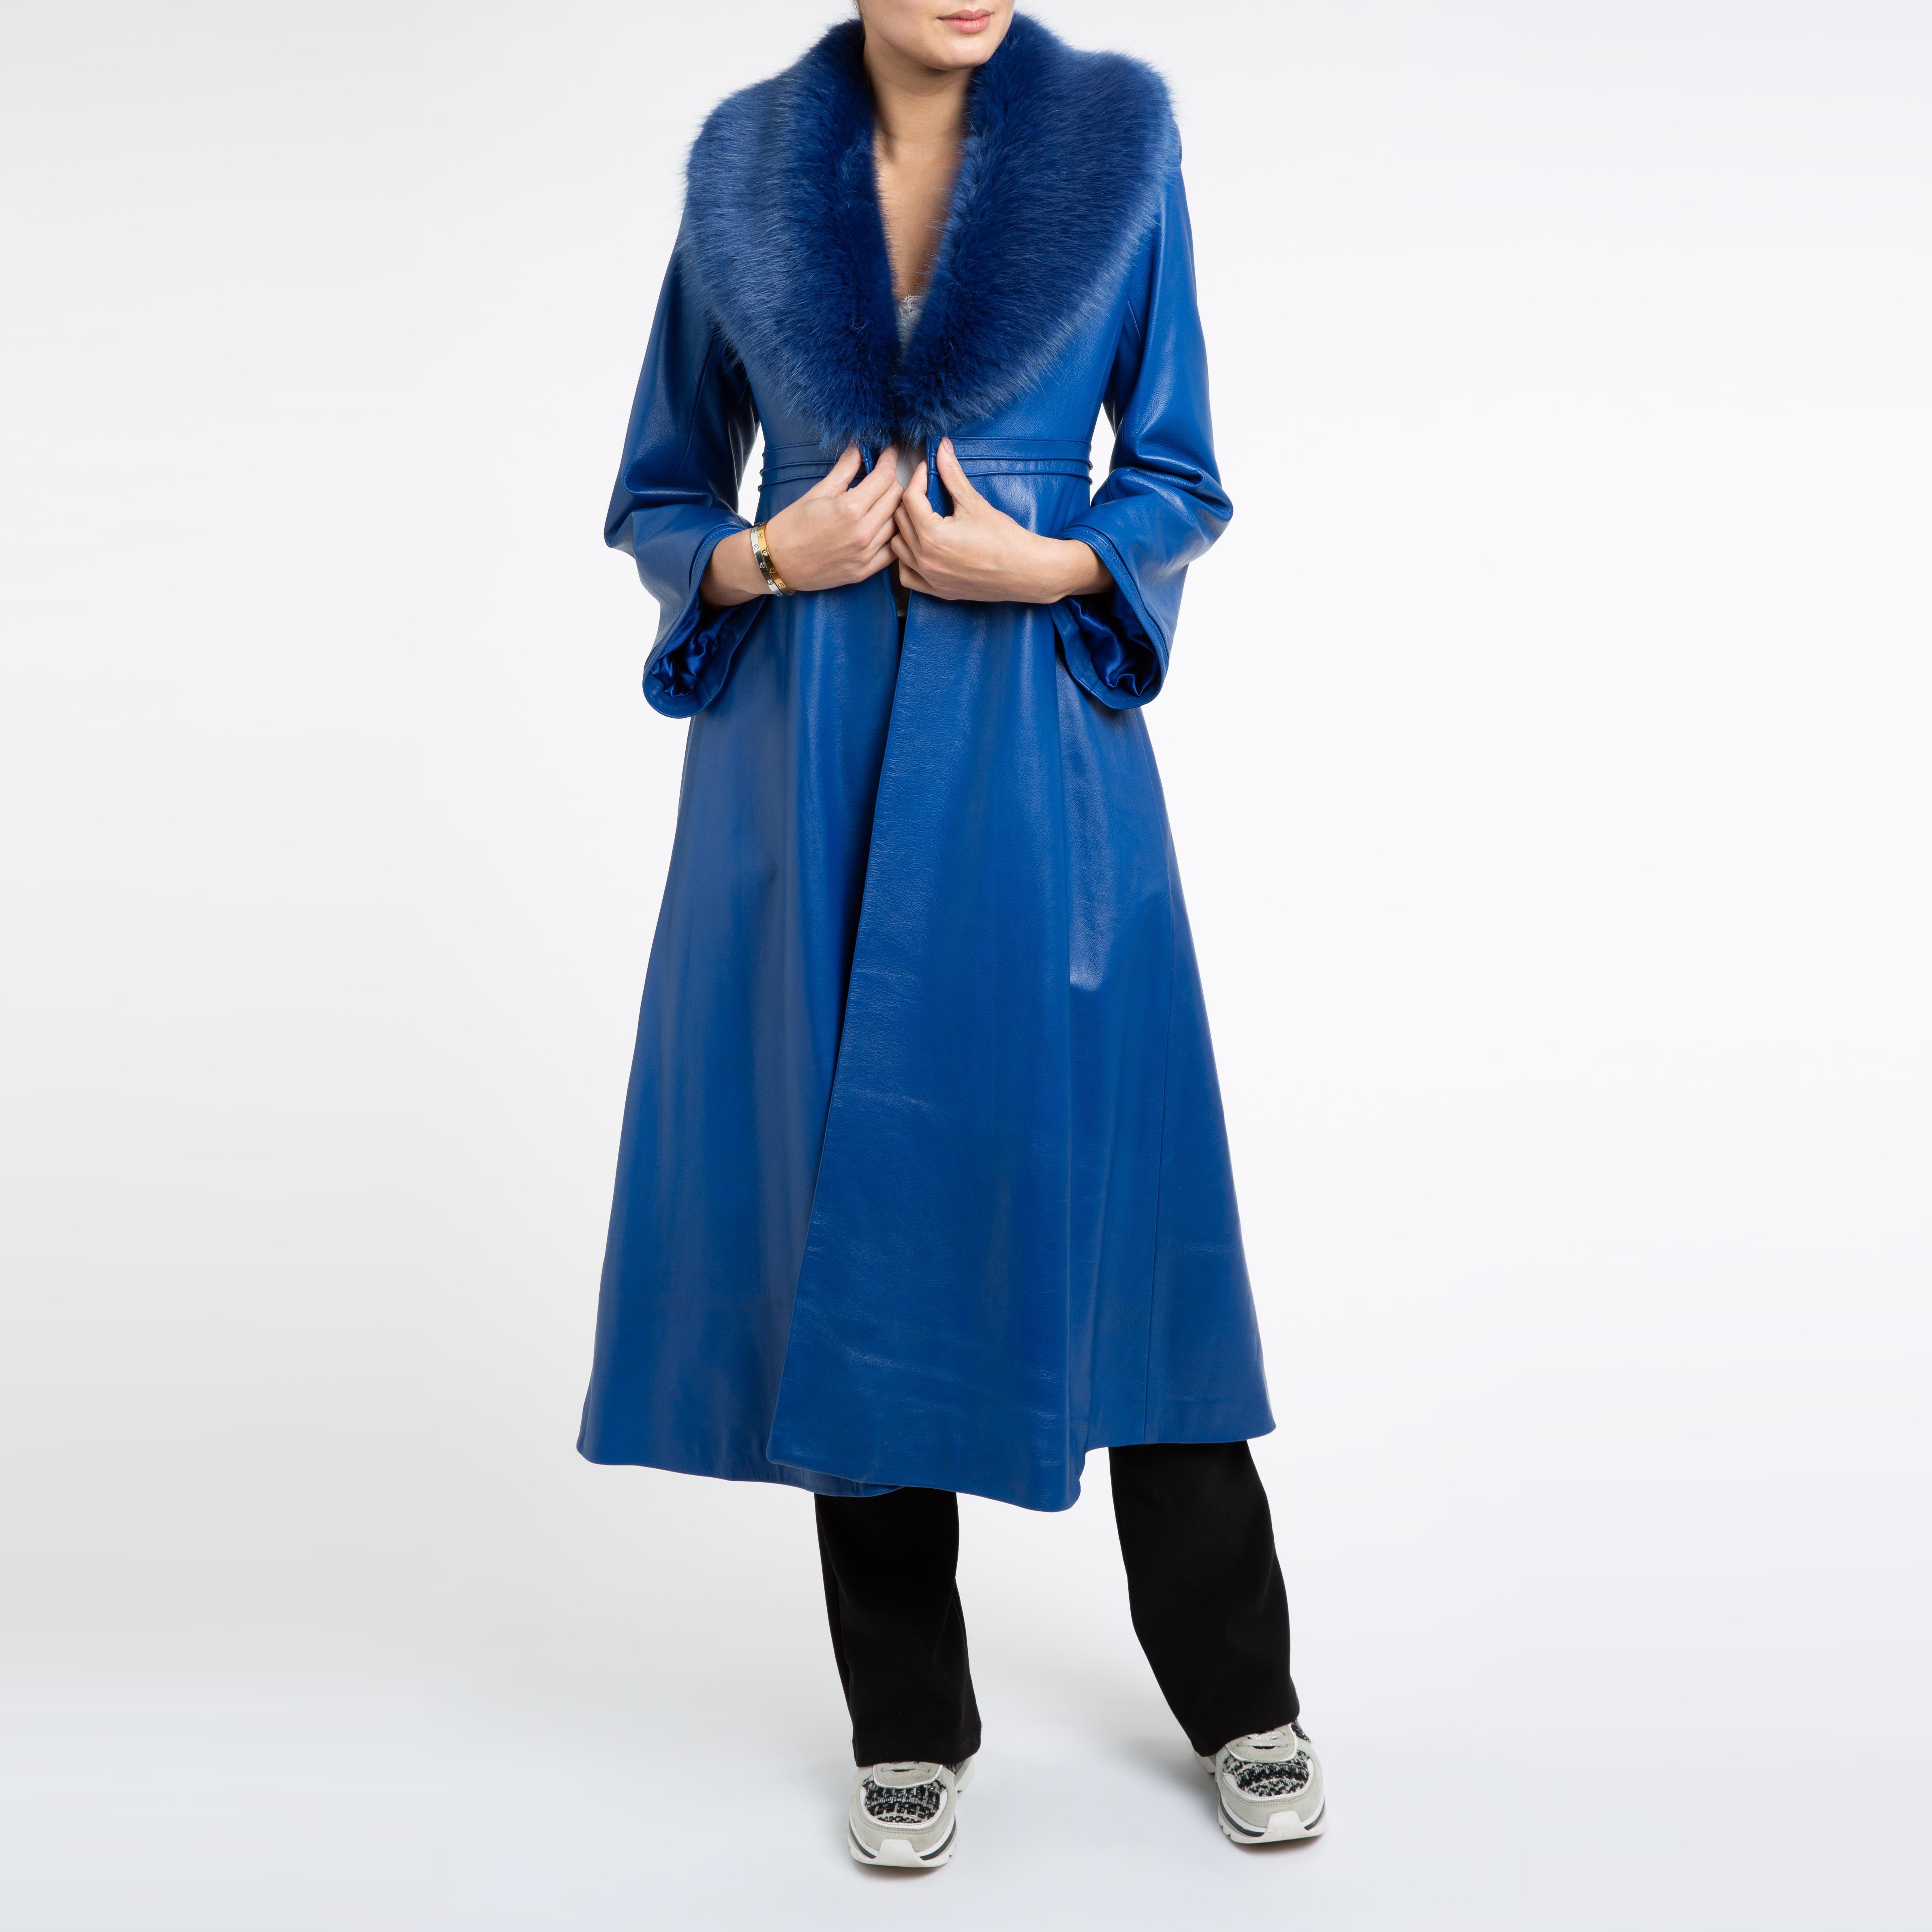 Verheyen London Edward Leather Coat in Blue with Faux Fur - Size uk 12 For Sale 3